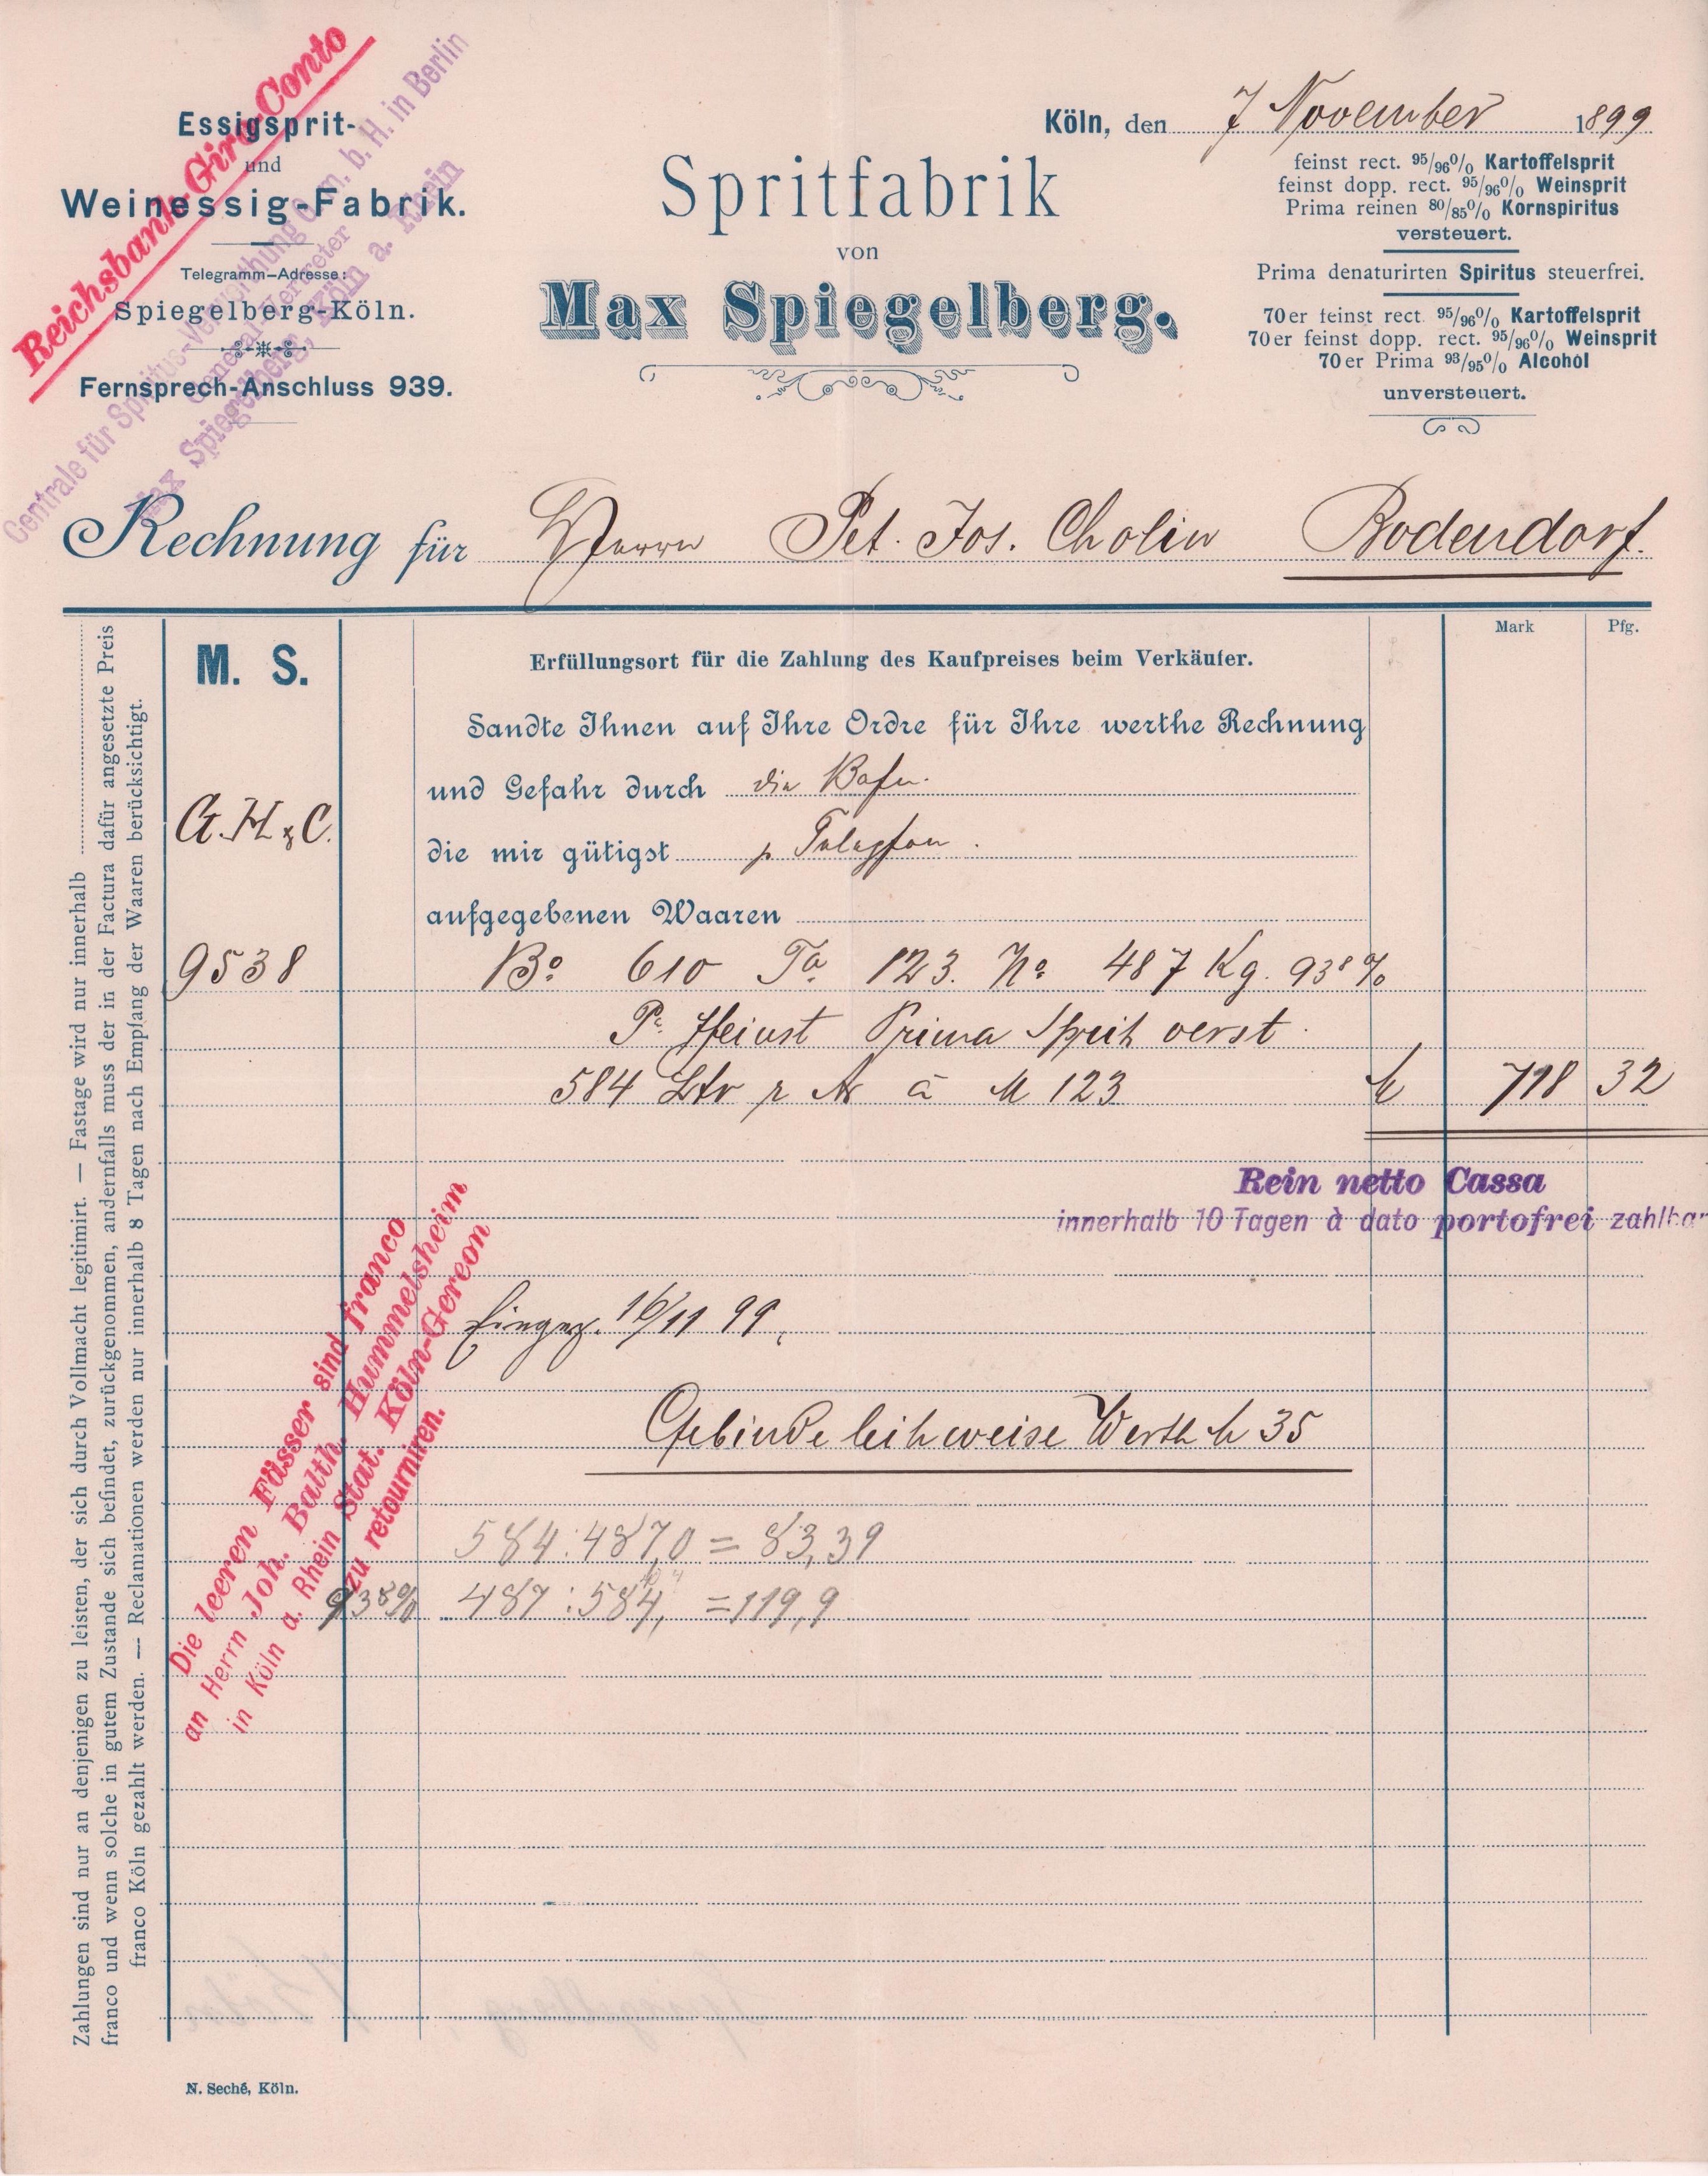 Rechnung von der Spritfabrik Max Spiegelberg vom 7. November 1899 an Peter Josef Cholin in Bodendorf/Ahr (Heimatarchiv Bad Bodendorf CC BY-NC-SA)